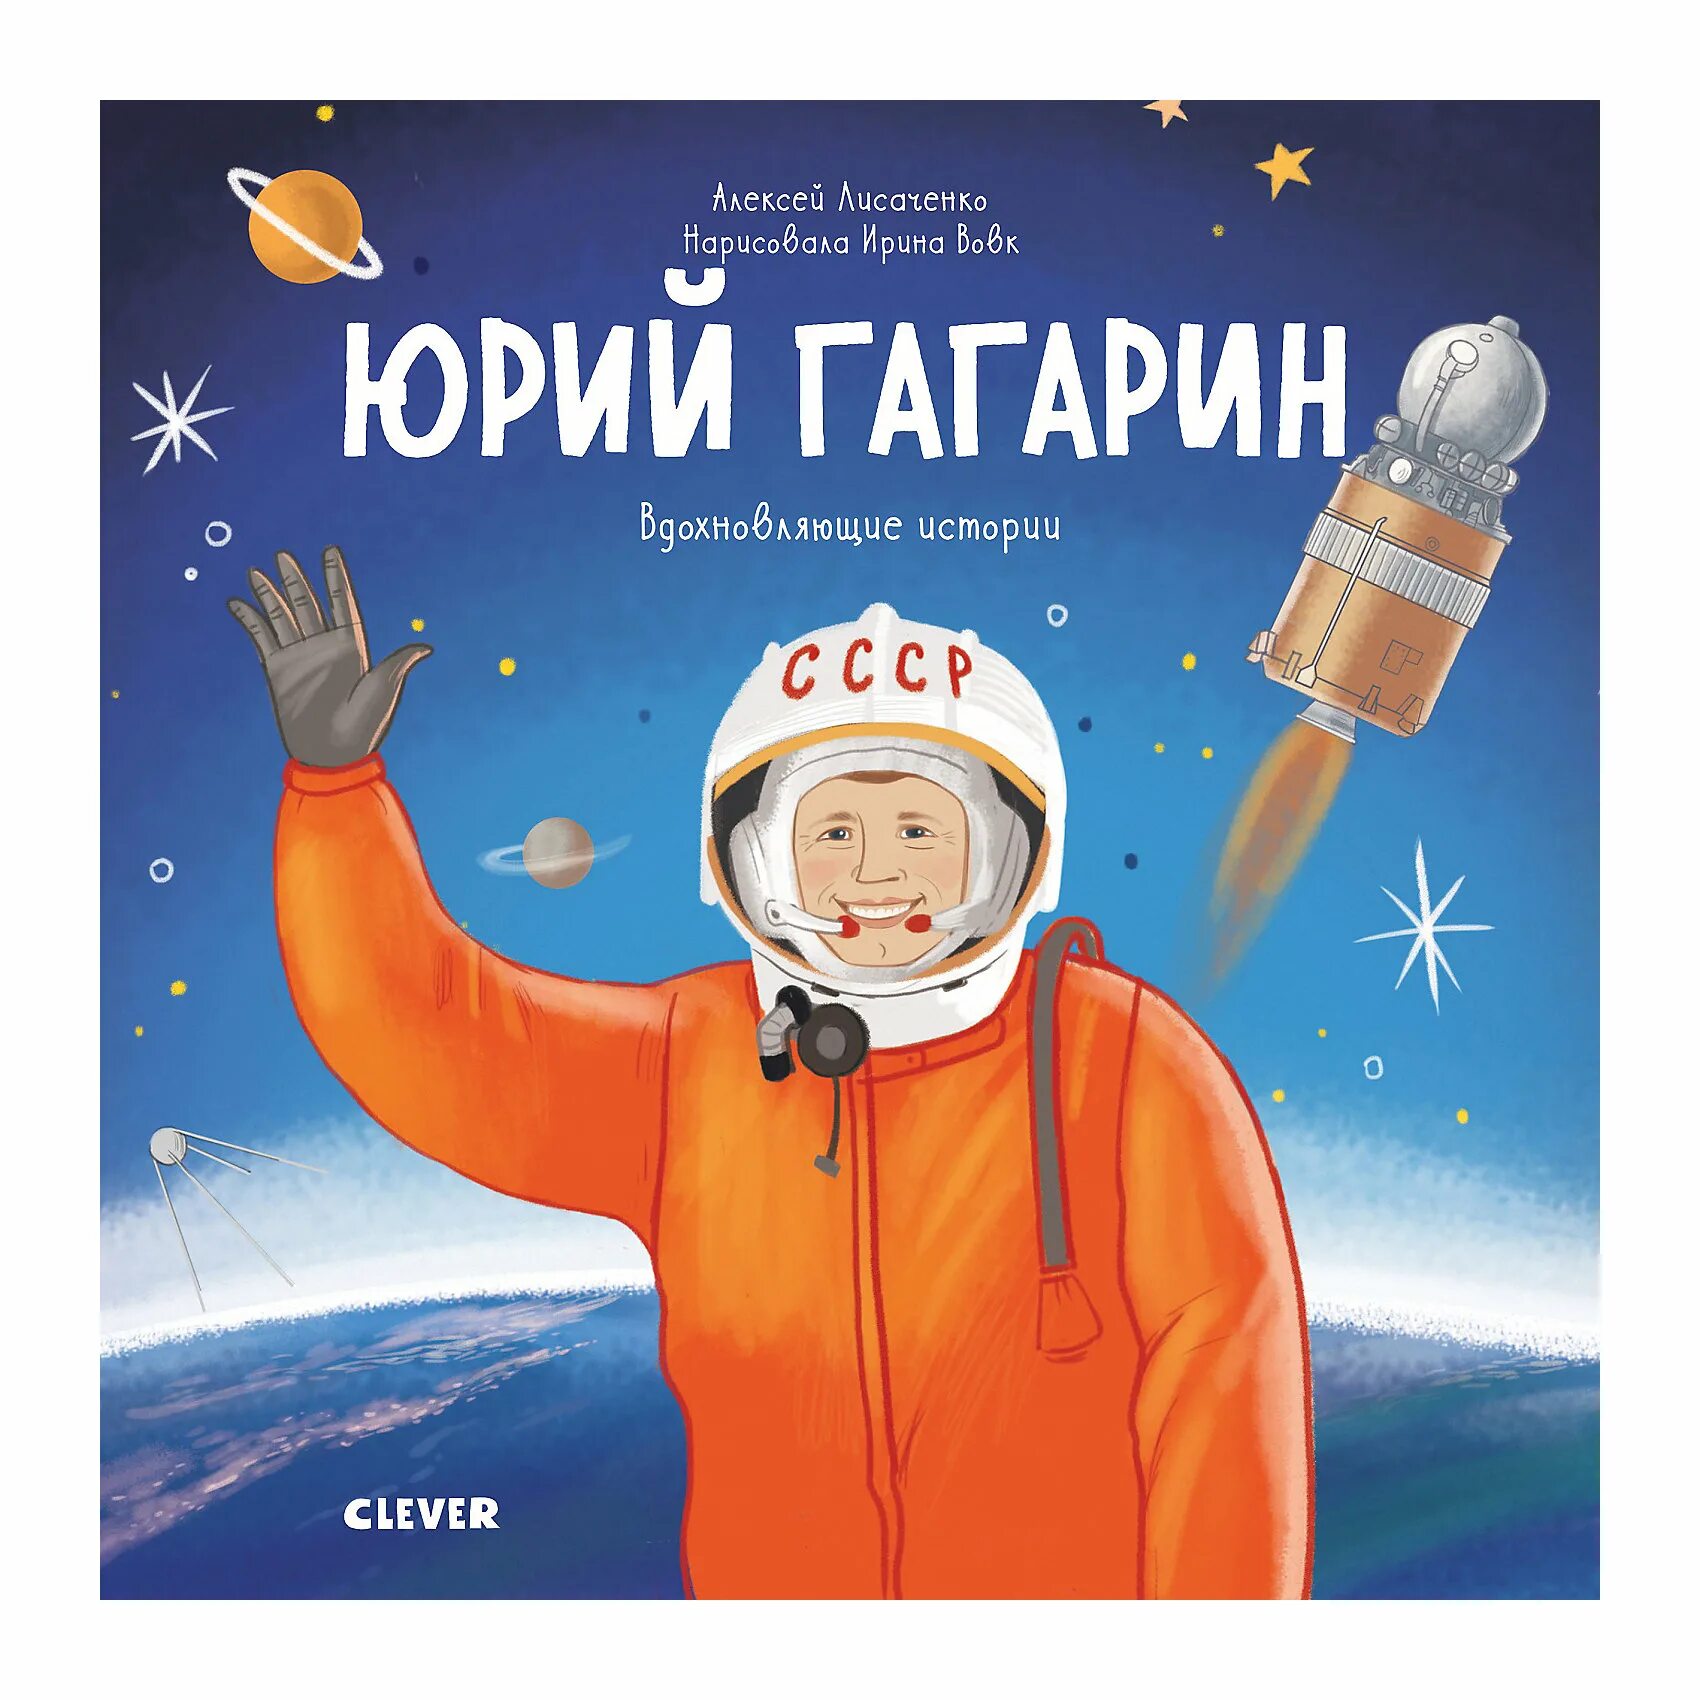 Книги о Гагарине для детей. Книга Юрия Гагарина. Космонавт для детей.